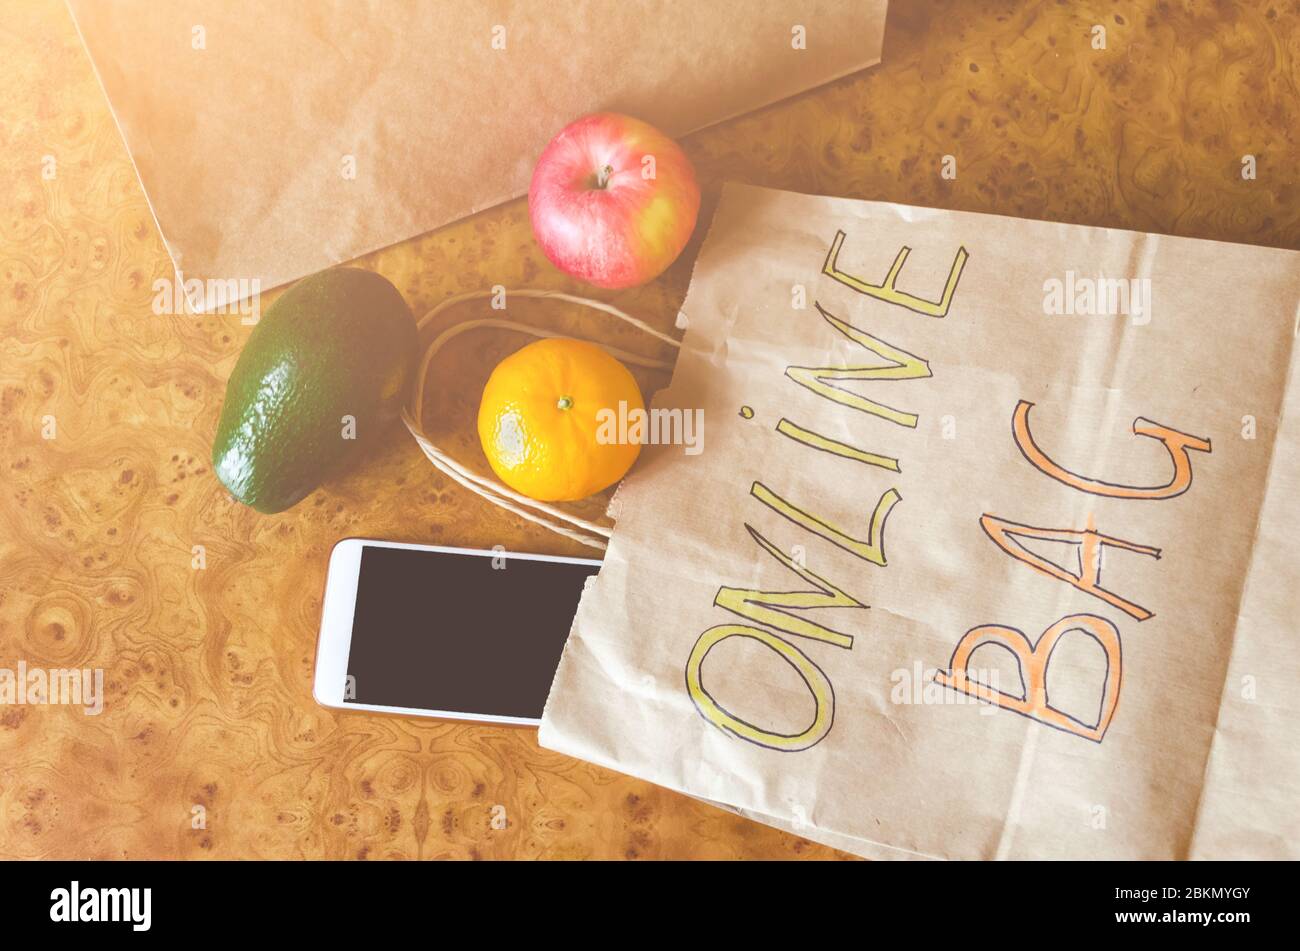 Sacchetto di carta con iscrizione - sacchetto online, frutta fresca diversa, verdure su sfondo di legno. Acquisto online e consegna senza contatto. A Foto Stock